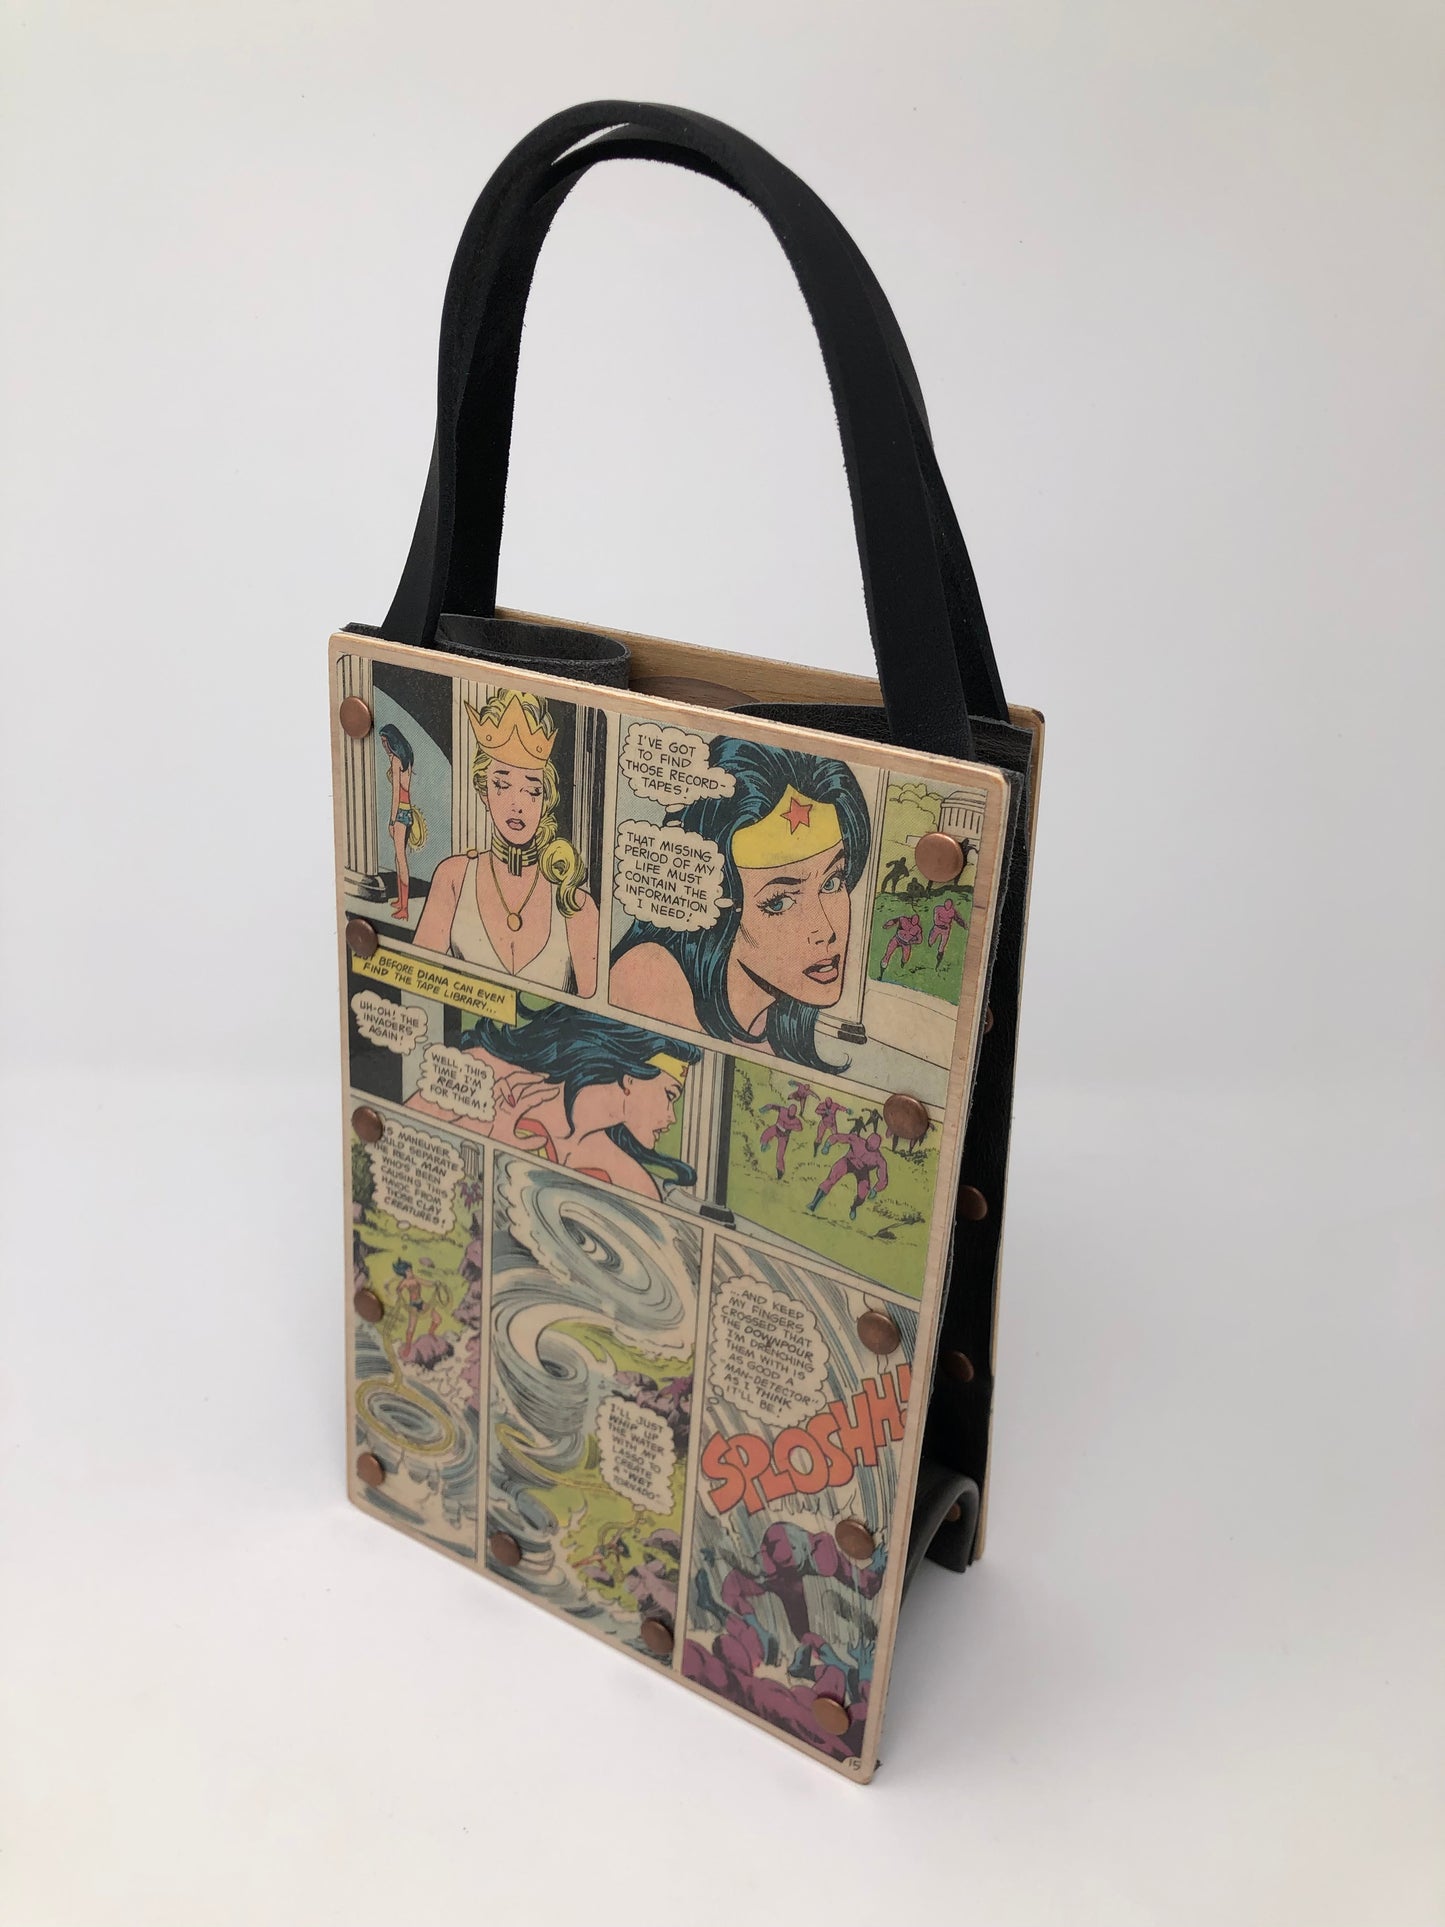 Vintage Wonder Woman Handbag - Clay Creatures